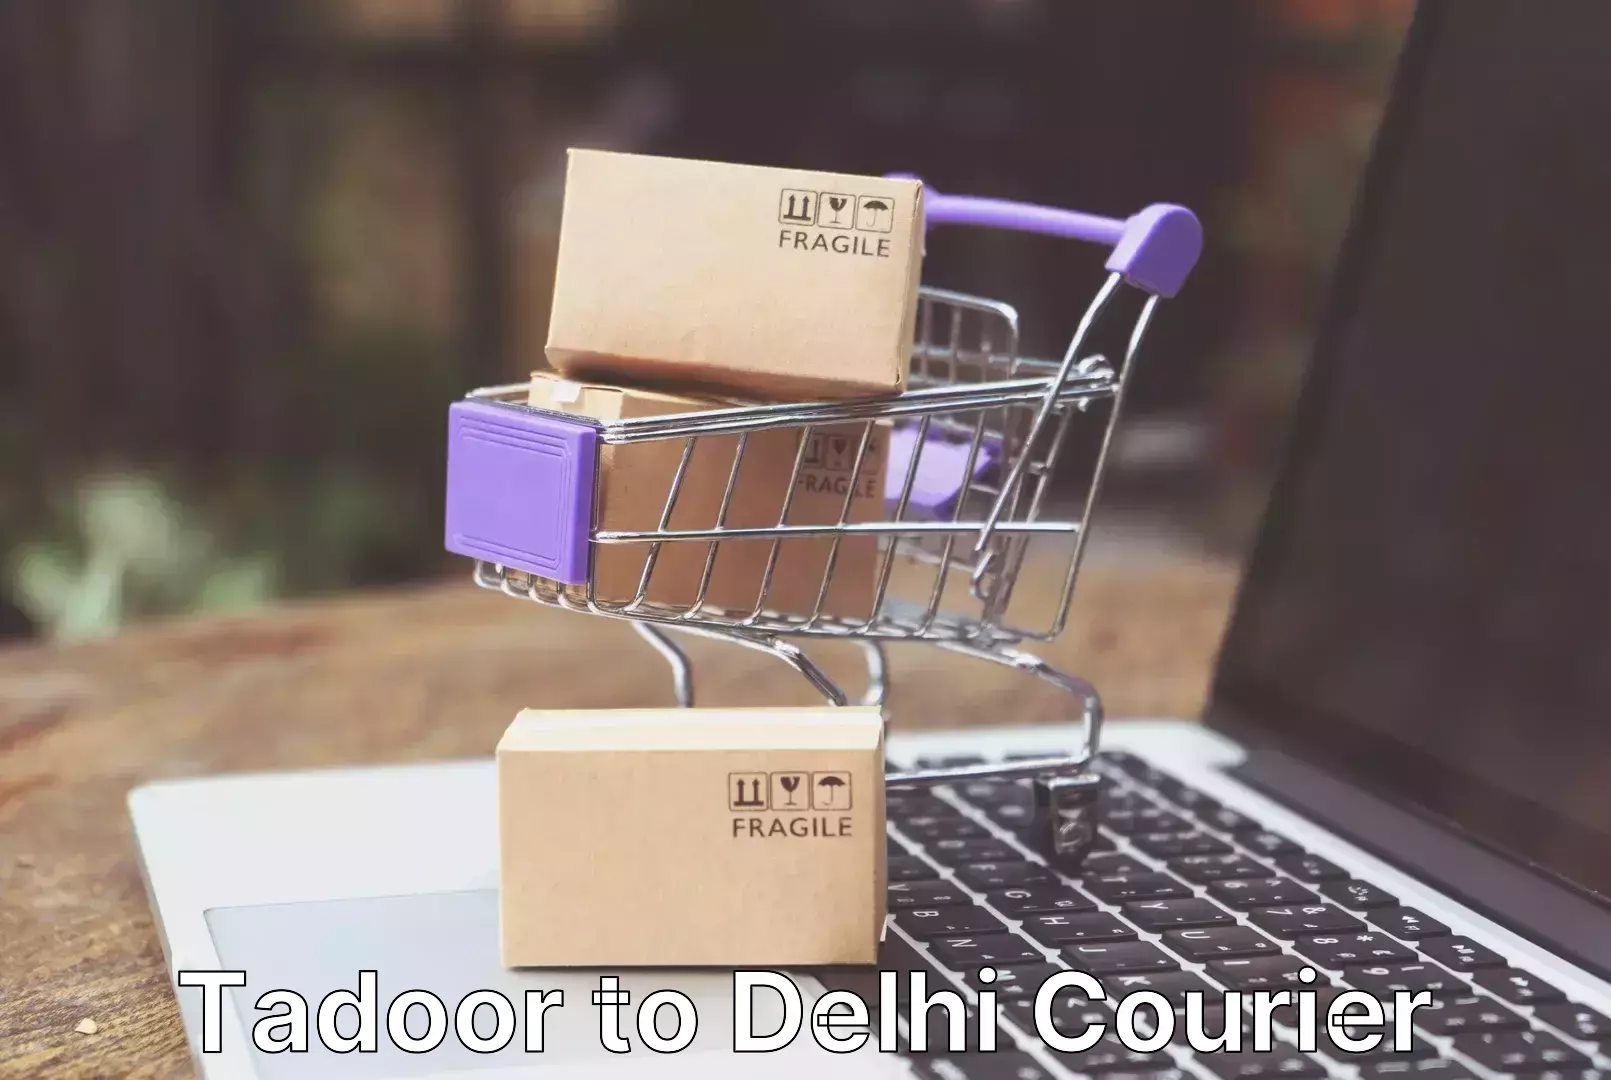 Furniture relocation experts Tadoor to Delhi